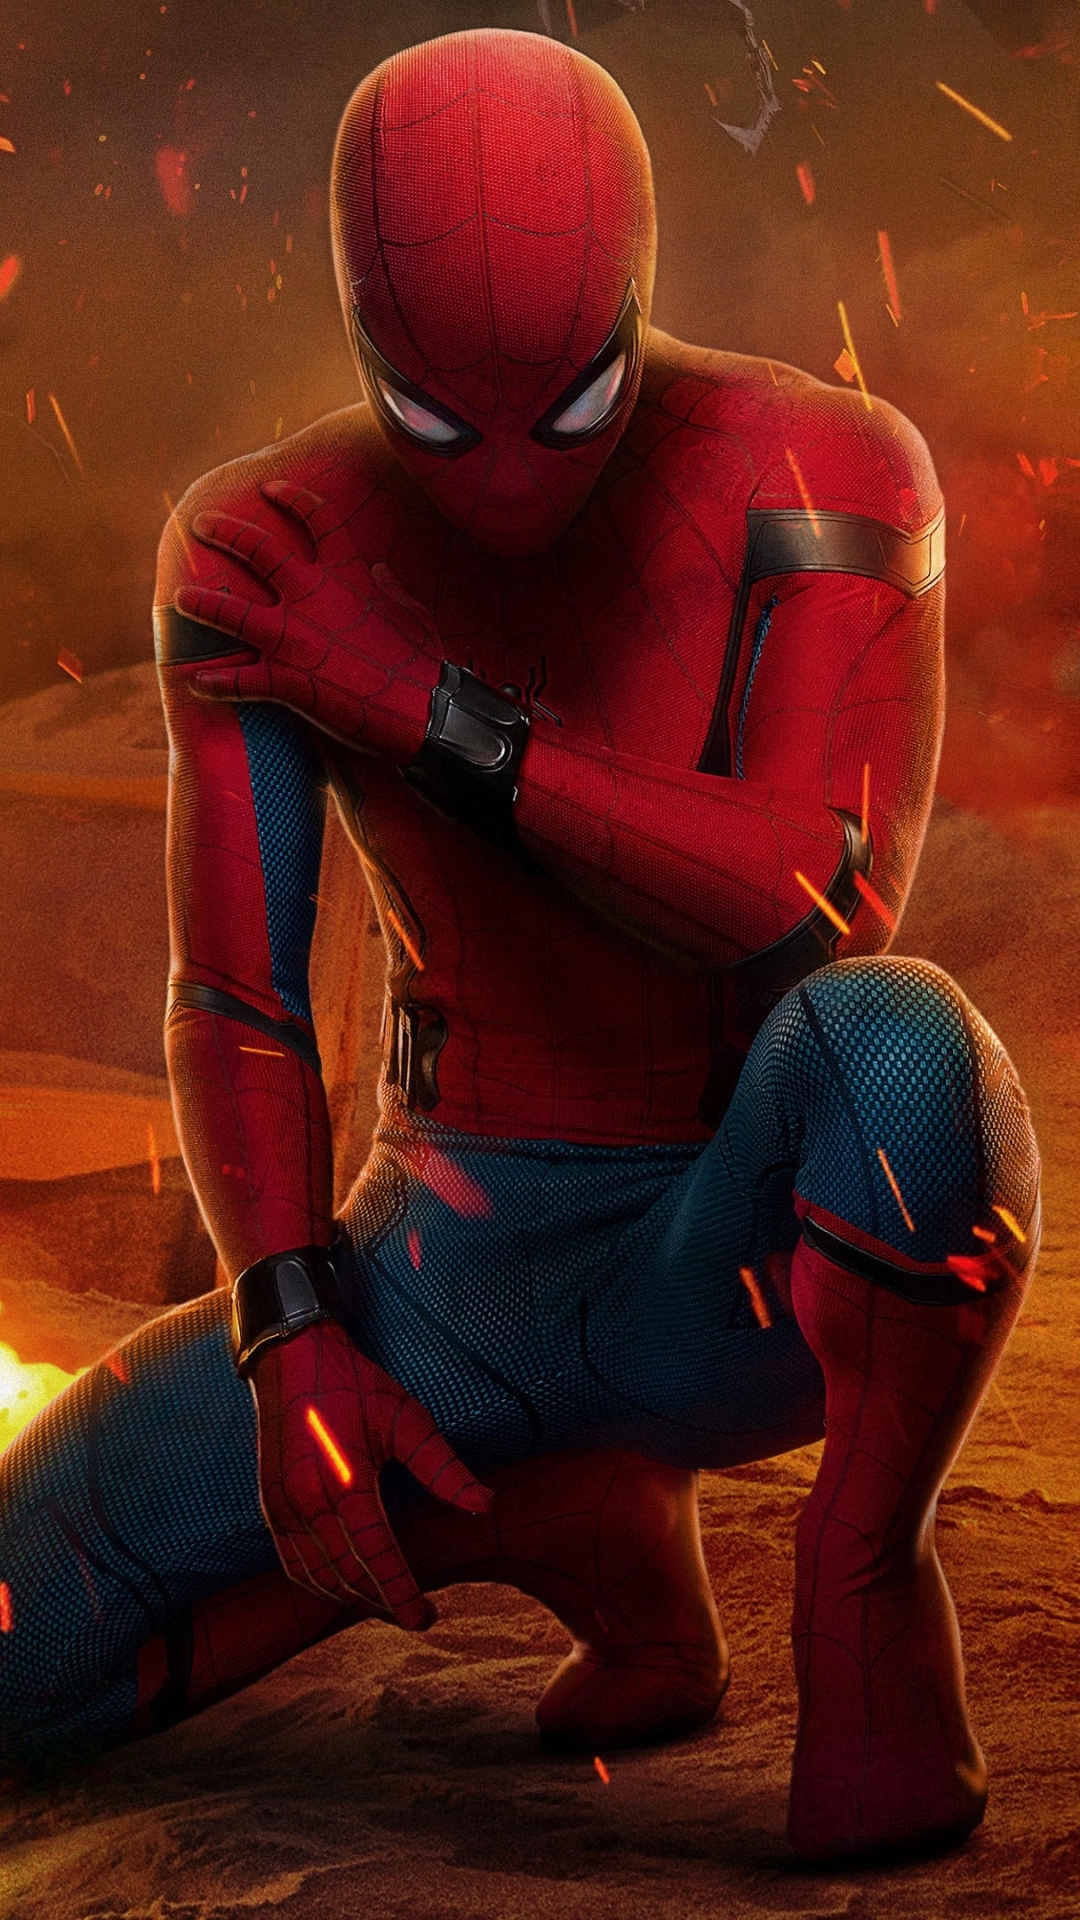 spider man 1 full movie download